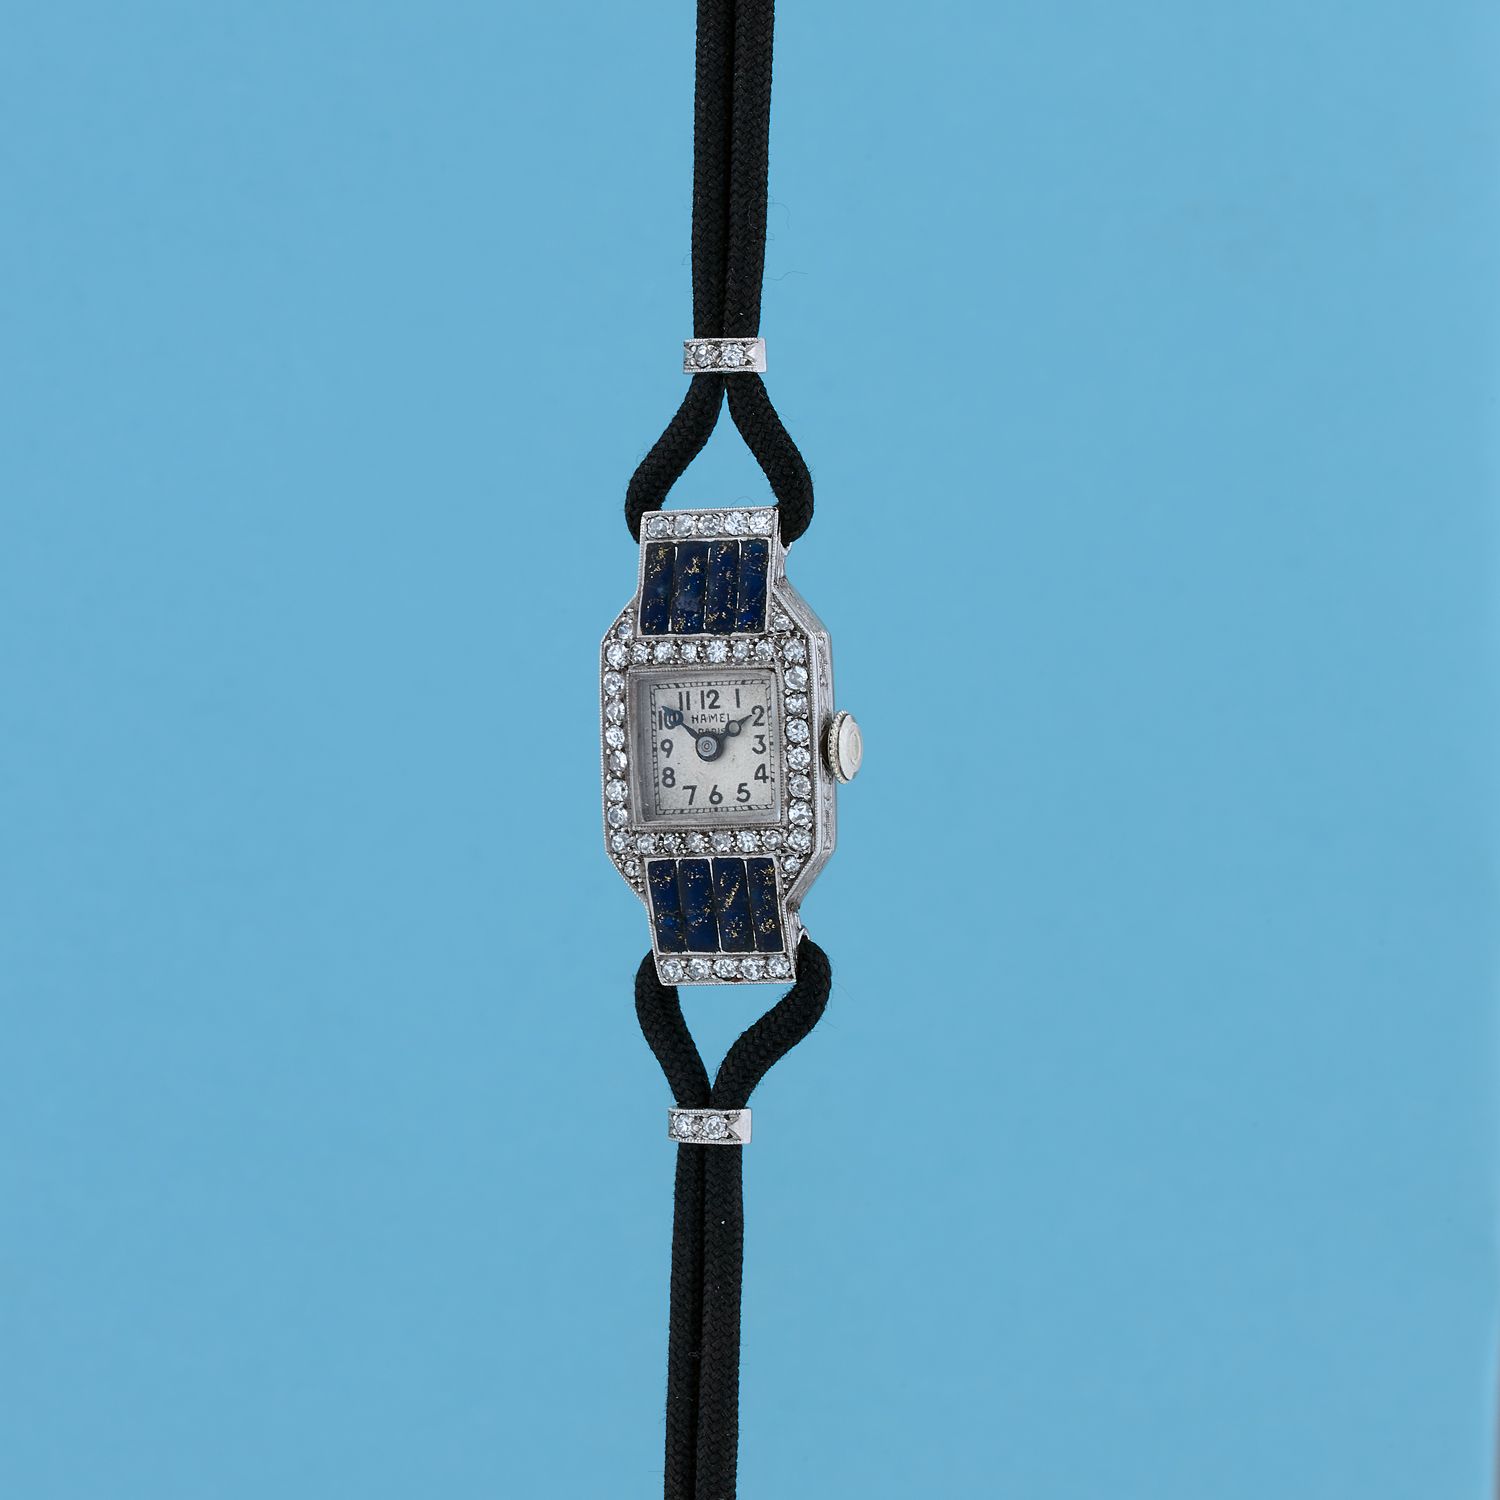 Null 哈默尔 
约：1940年。
750/1000白金女士腕表，镶嵌钻石。表盘上有阿拉伯数字和铁路标记。机械机芯，手动上链。750/1000金表带和表扣。
&hellip;